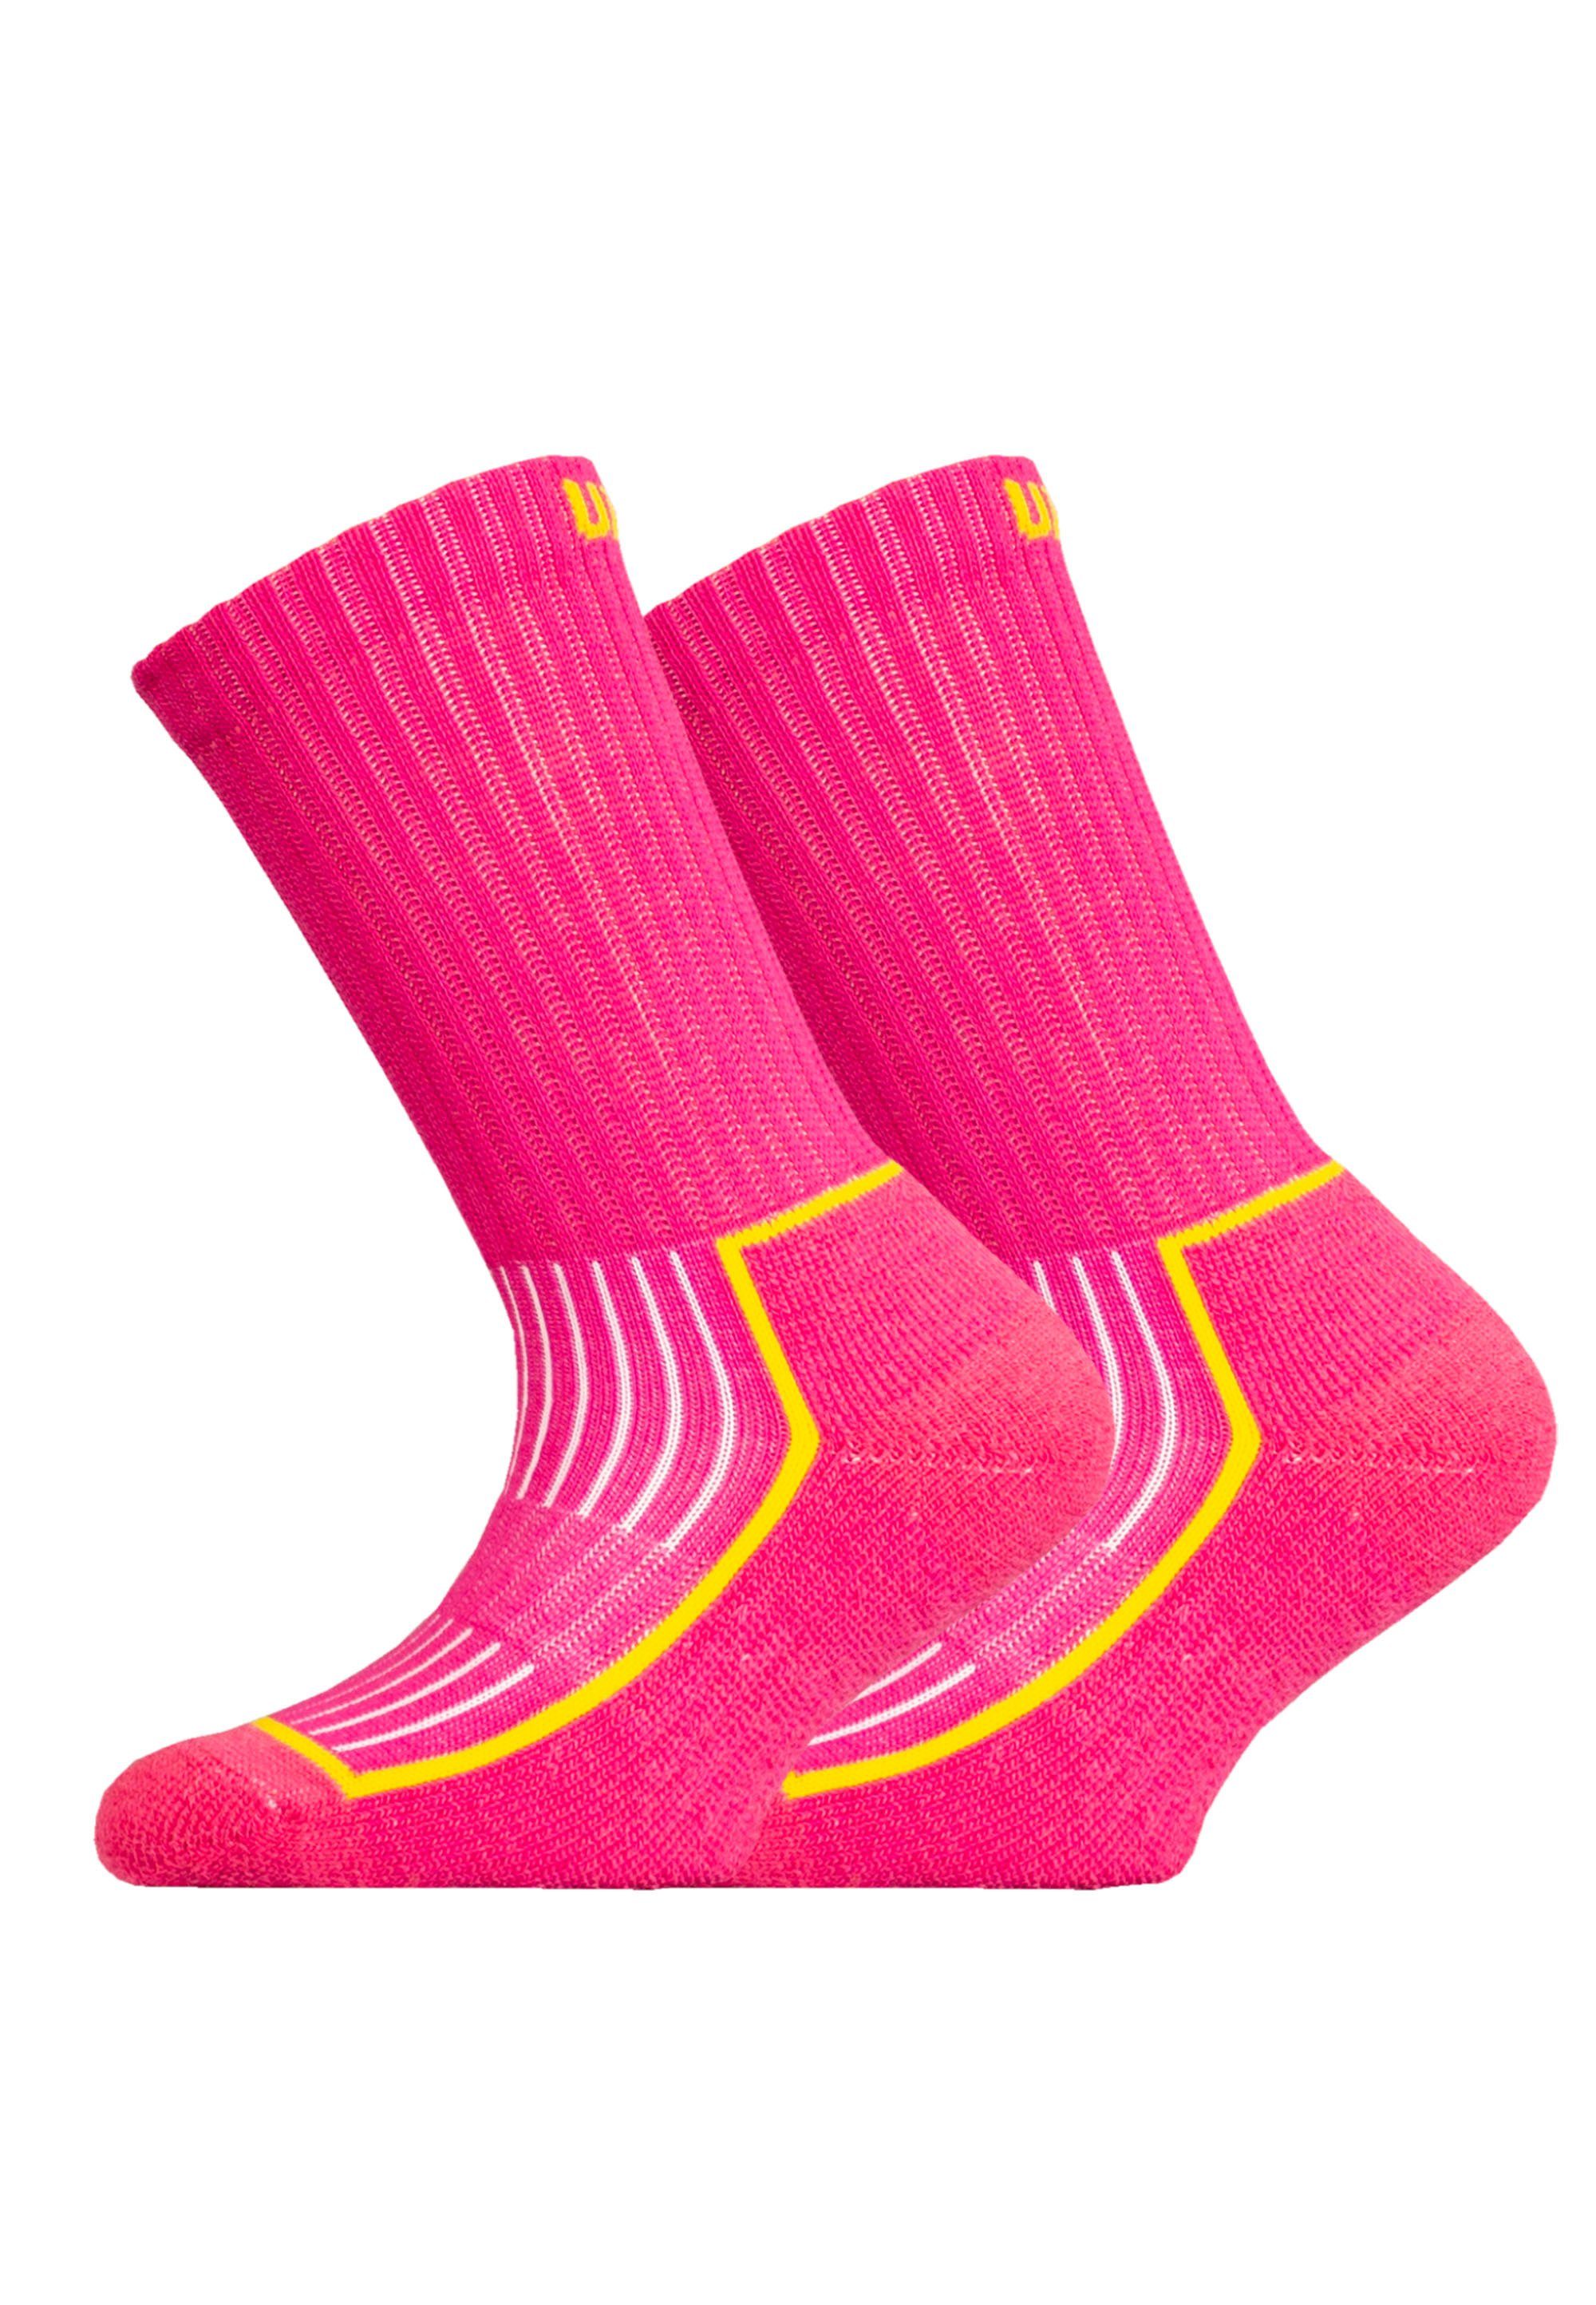 JR Pack Flextech-Struktur rosa mit SAANA (2-Paar) Socken 2er UphillSport